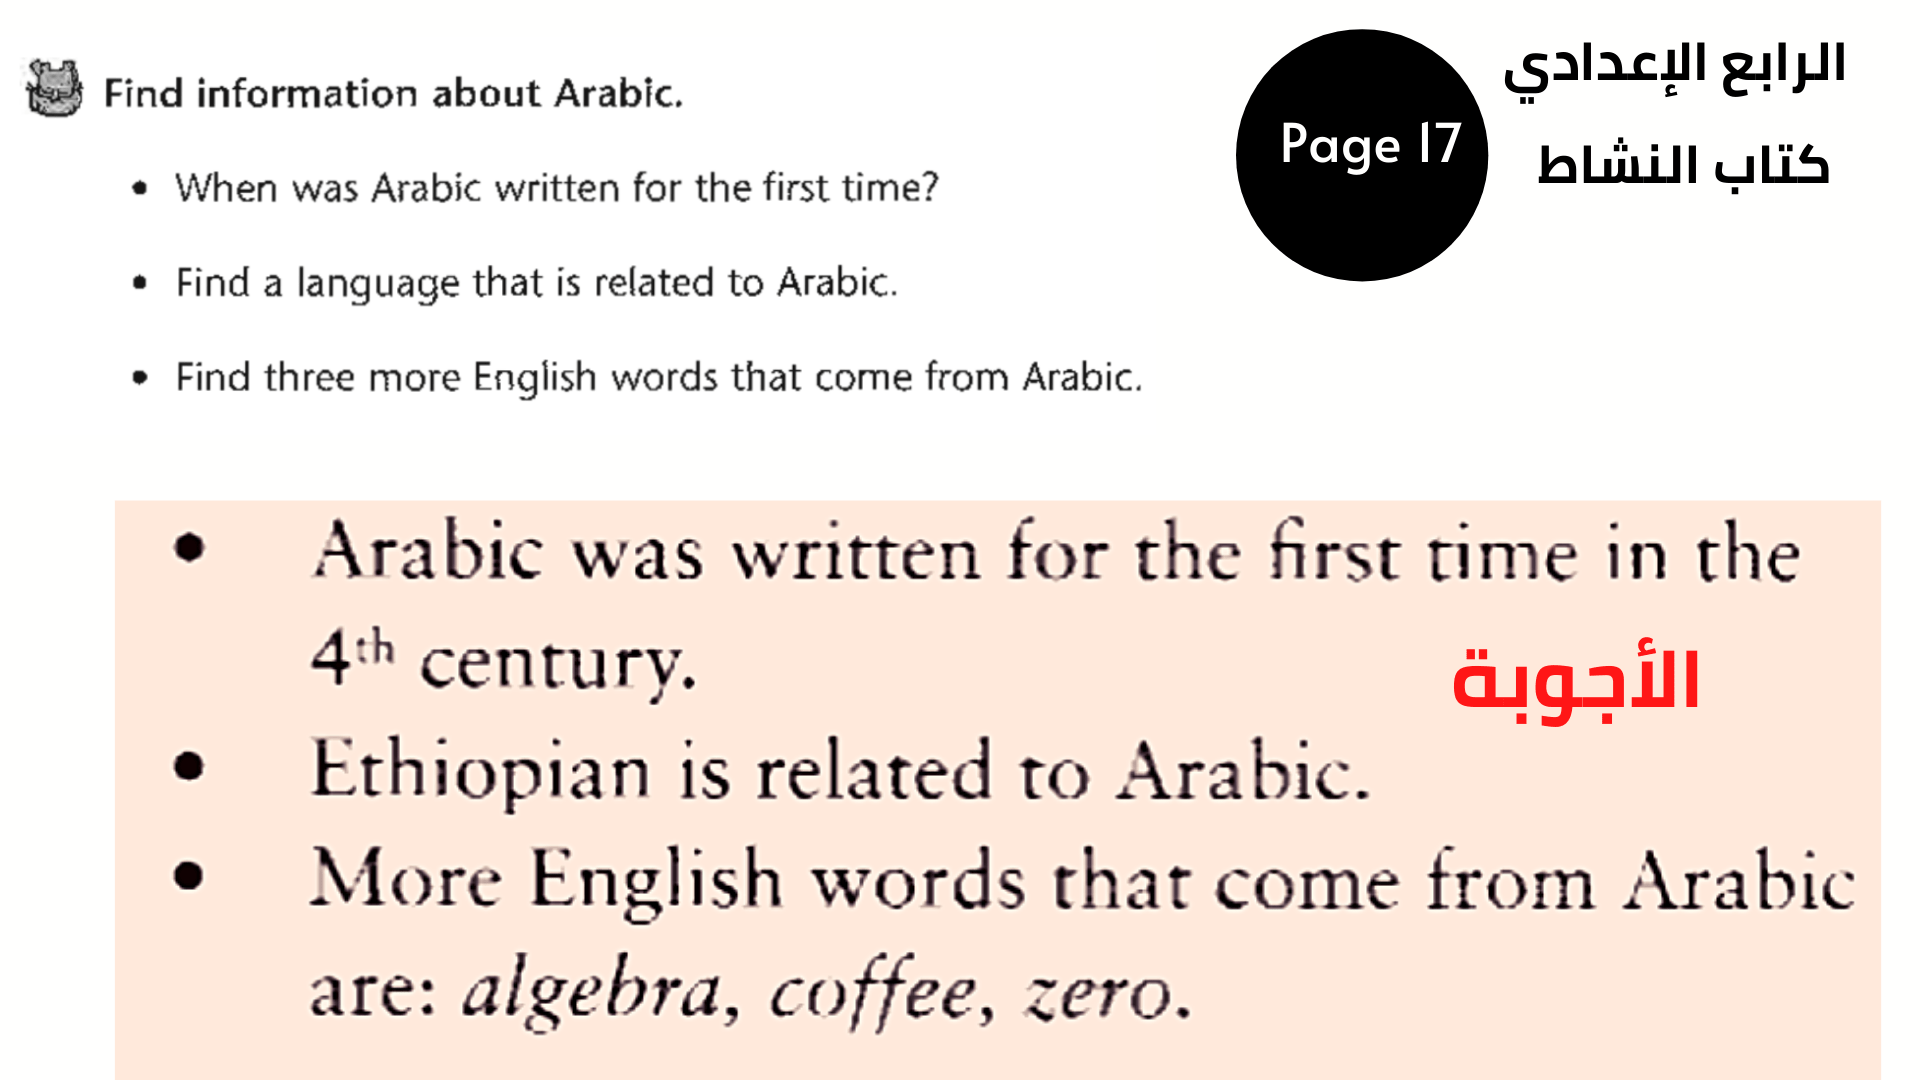 اعثر على معلومات حول اللغة العربية.